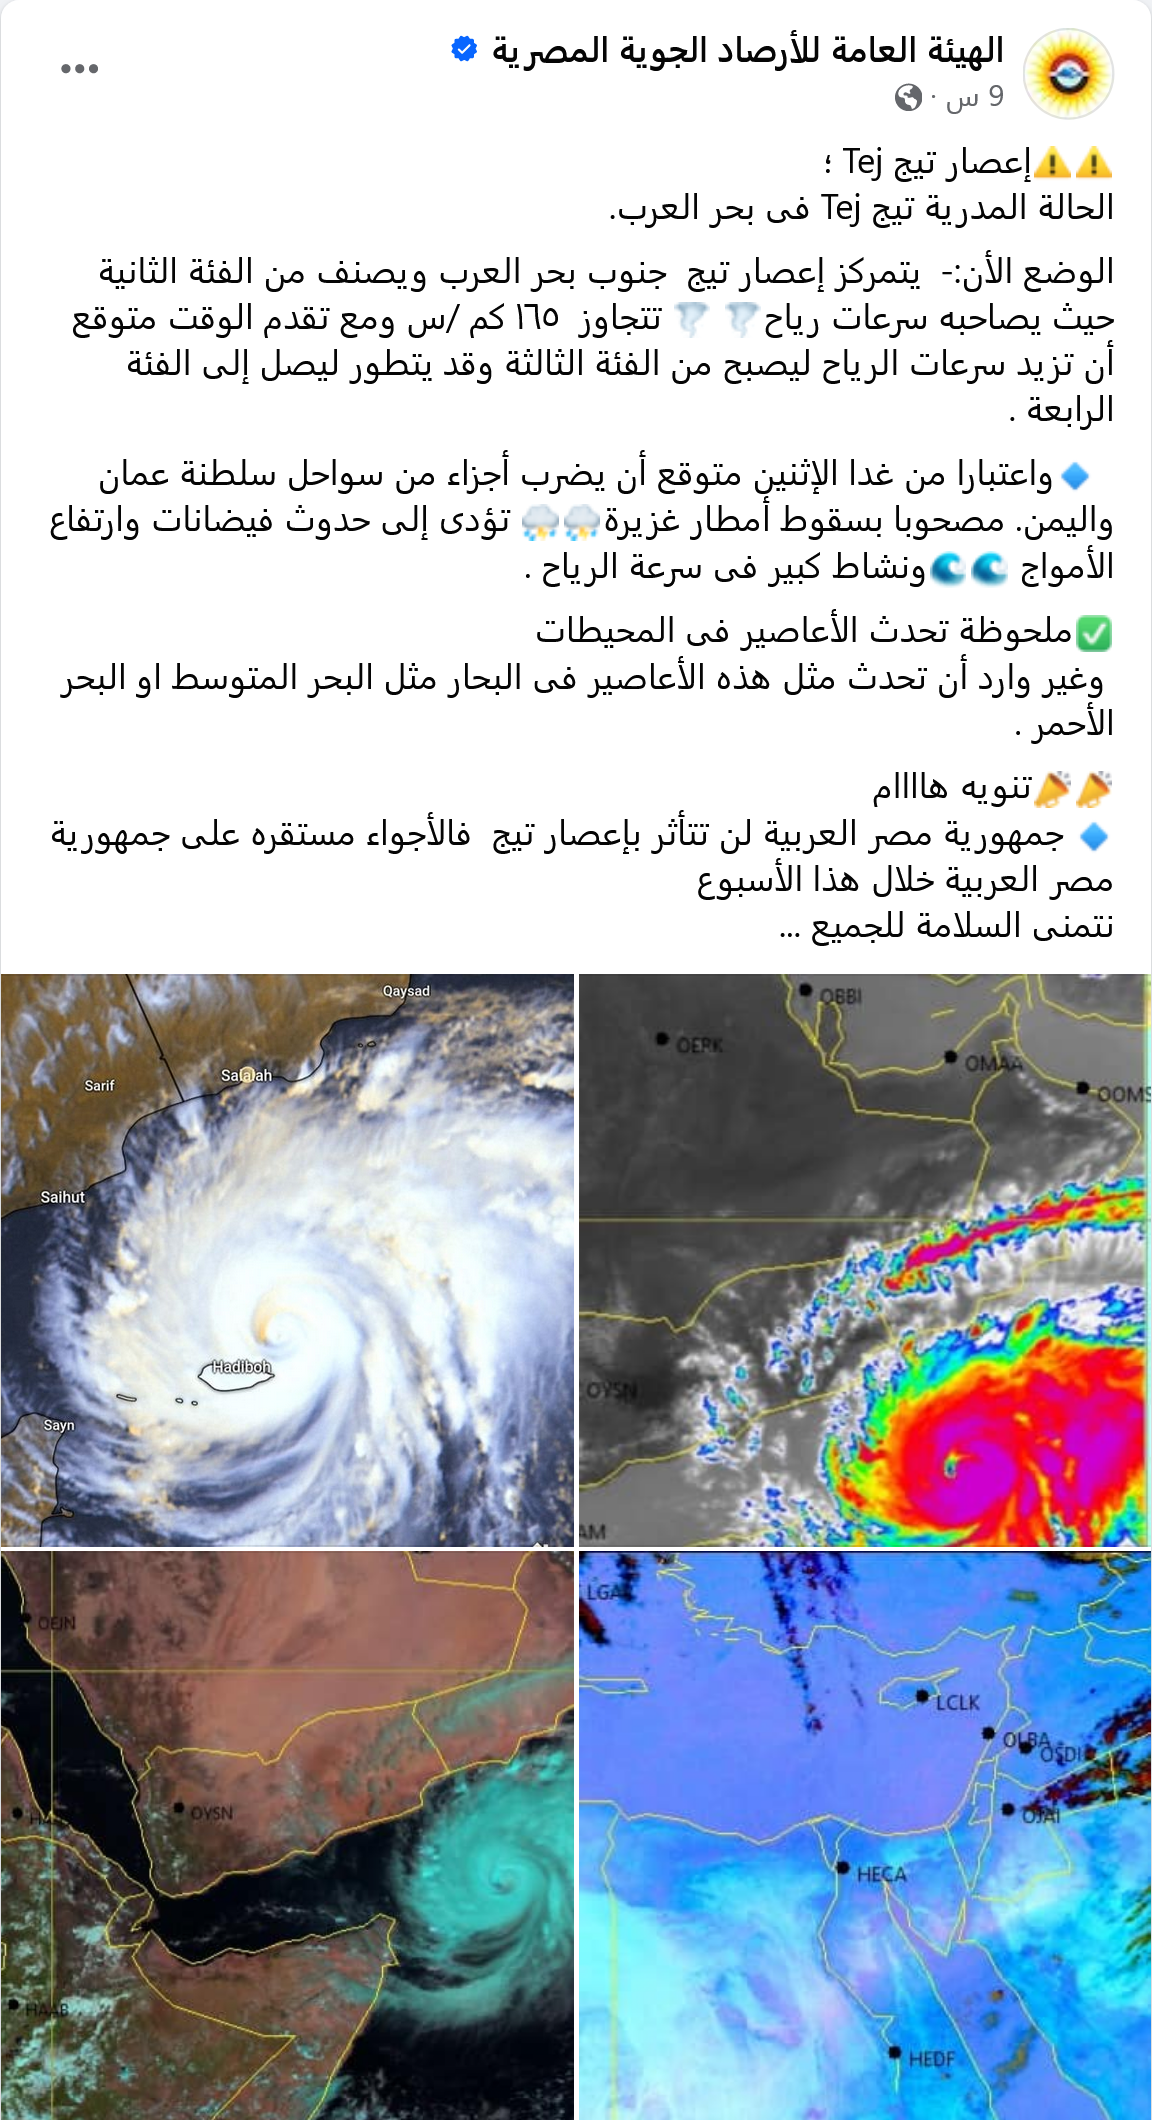 بيان الهيئة العامة للأرصاد الجوية المصرية بشأن الإعصار